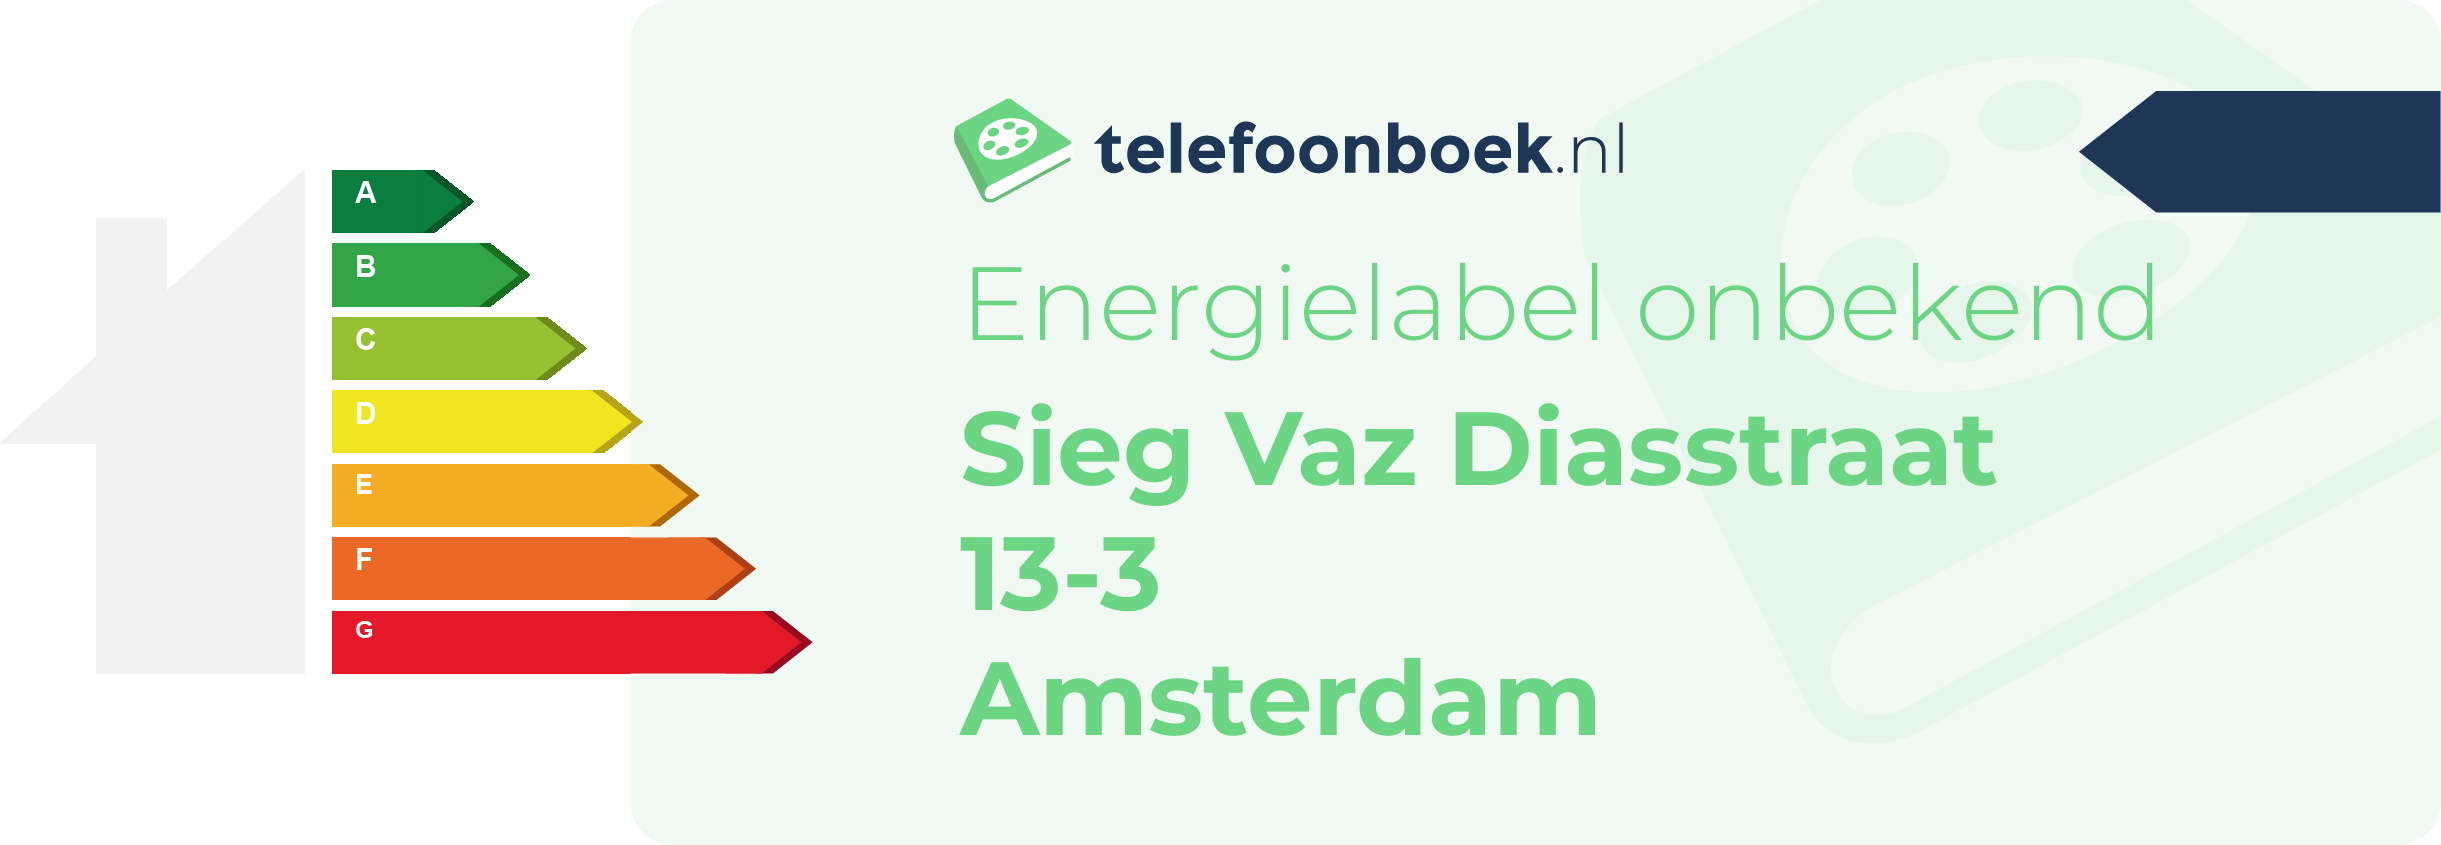 Energielabel Sieg Vaz Diasstraat 13-3 Amsterdam